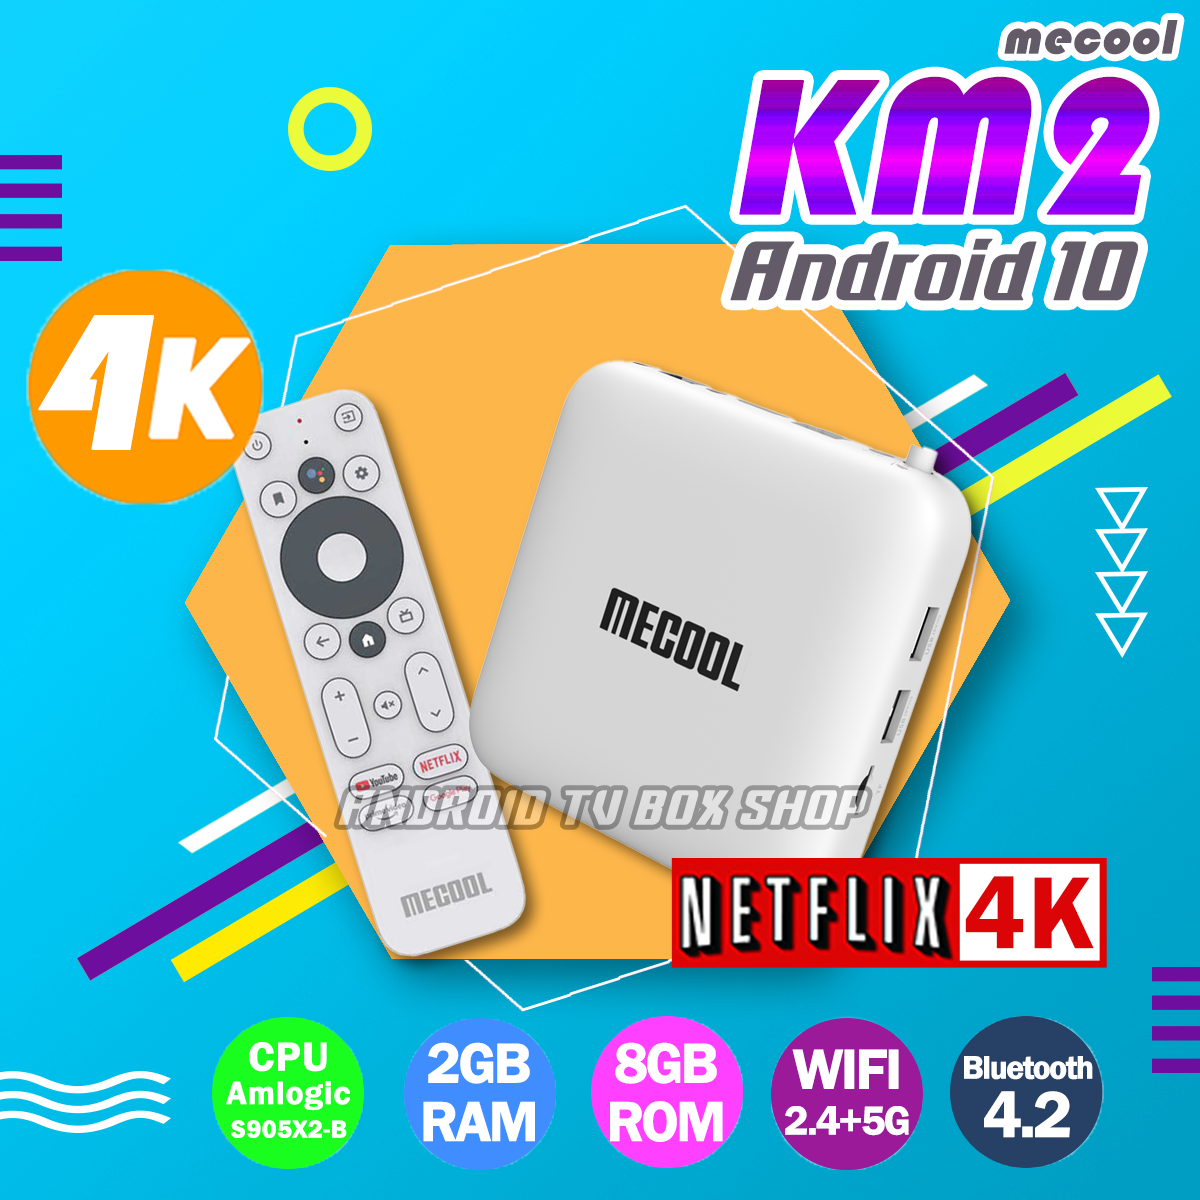 กล่องแอนดรอยทีวีแท้ Me cool Km2  Android 10, 2GB RAM , 8GB ROM, 2.4G&5G Wifi เสียง Dolby รองรับ netflix 4K